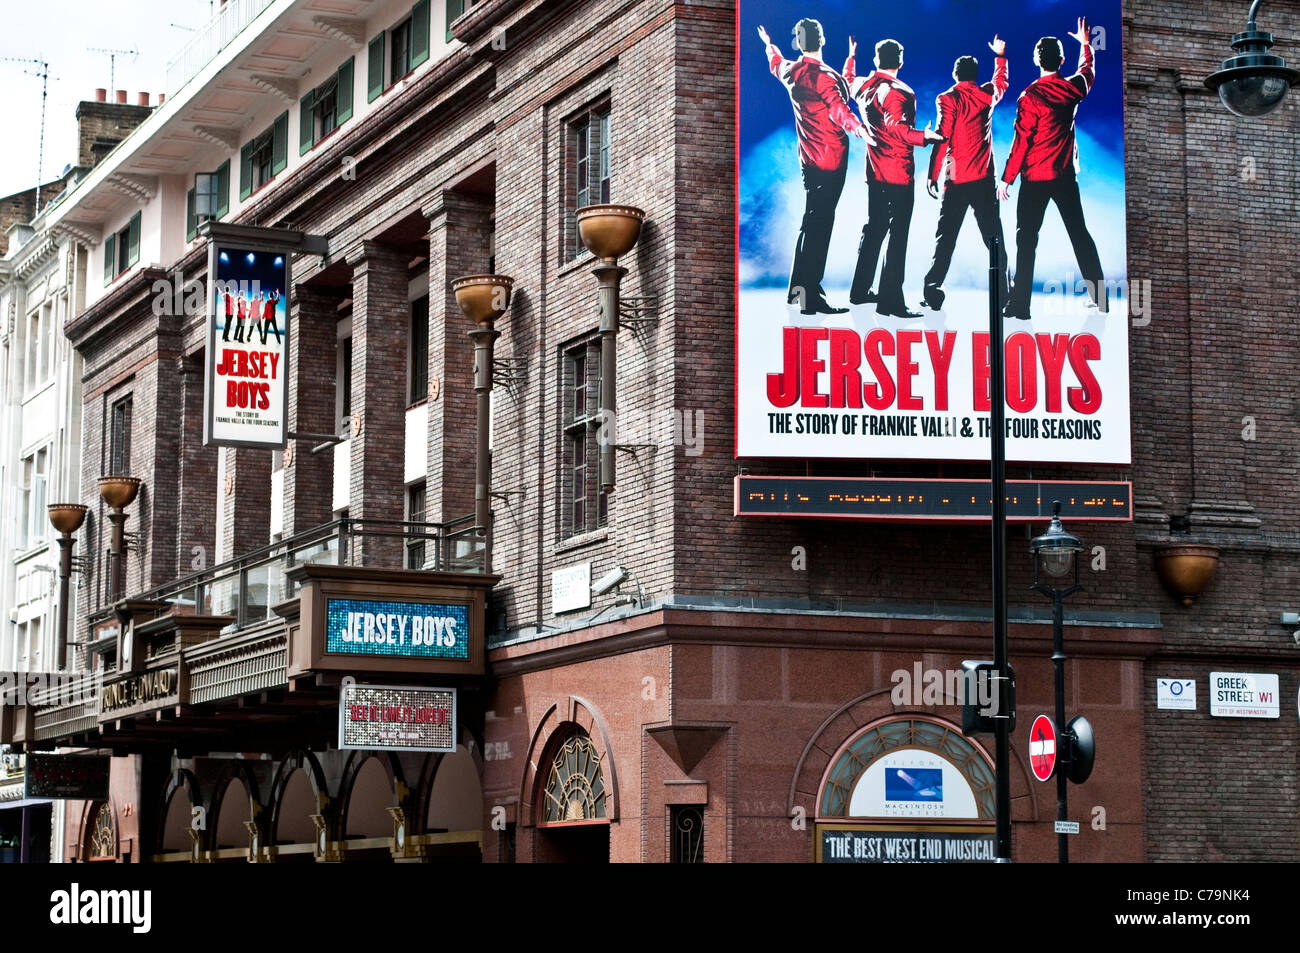 Prince Edward Theatre sulla vecchia strada Compton mostra Jersey Boys musical, London, Regno Unito Foto Stock